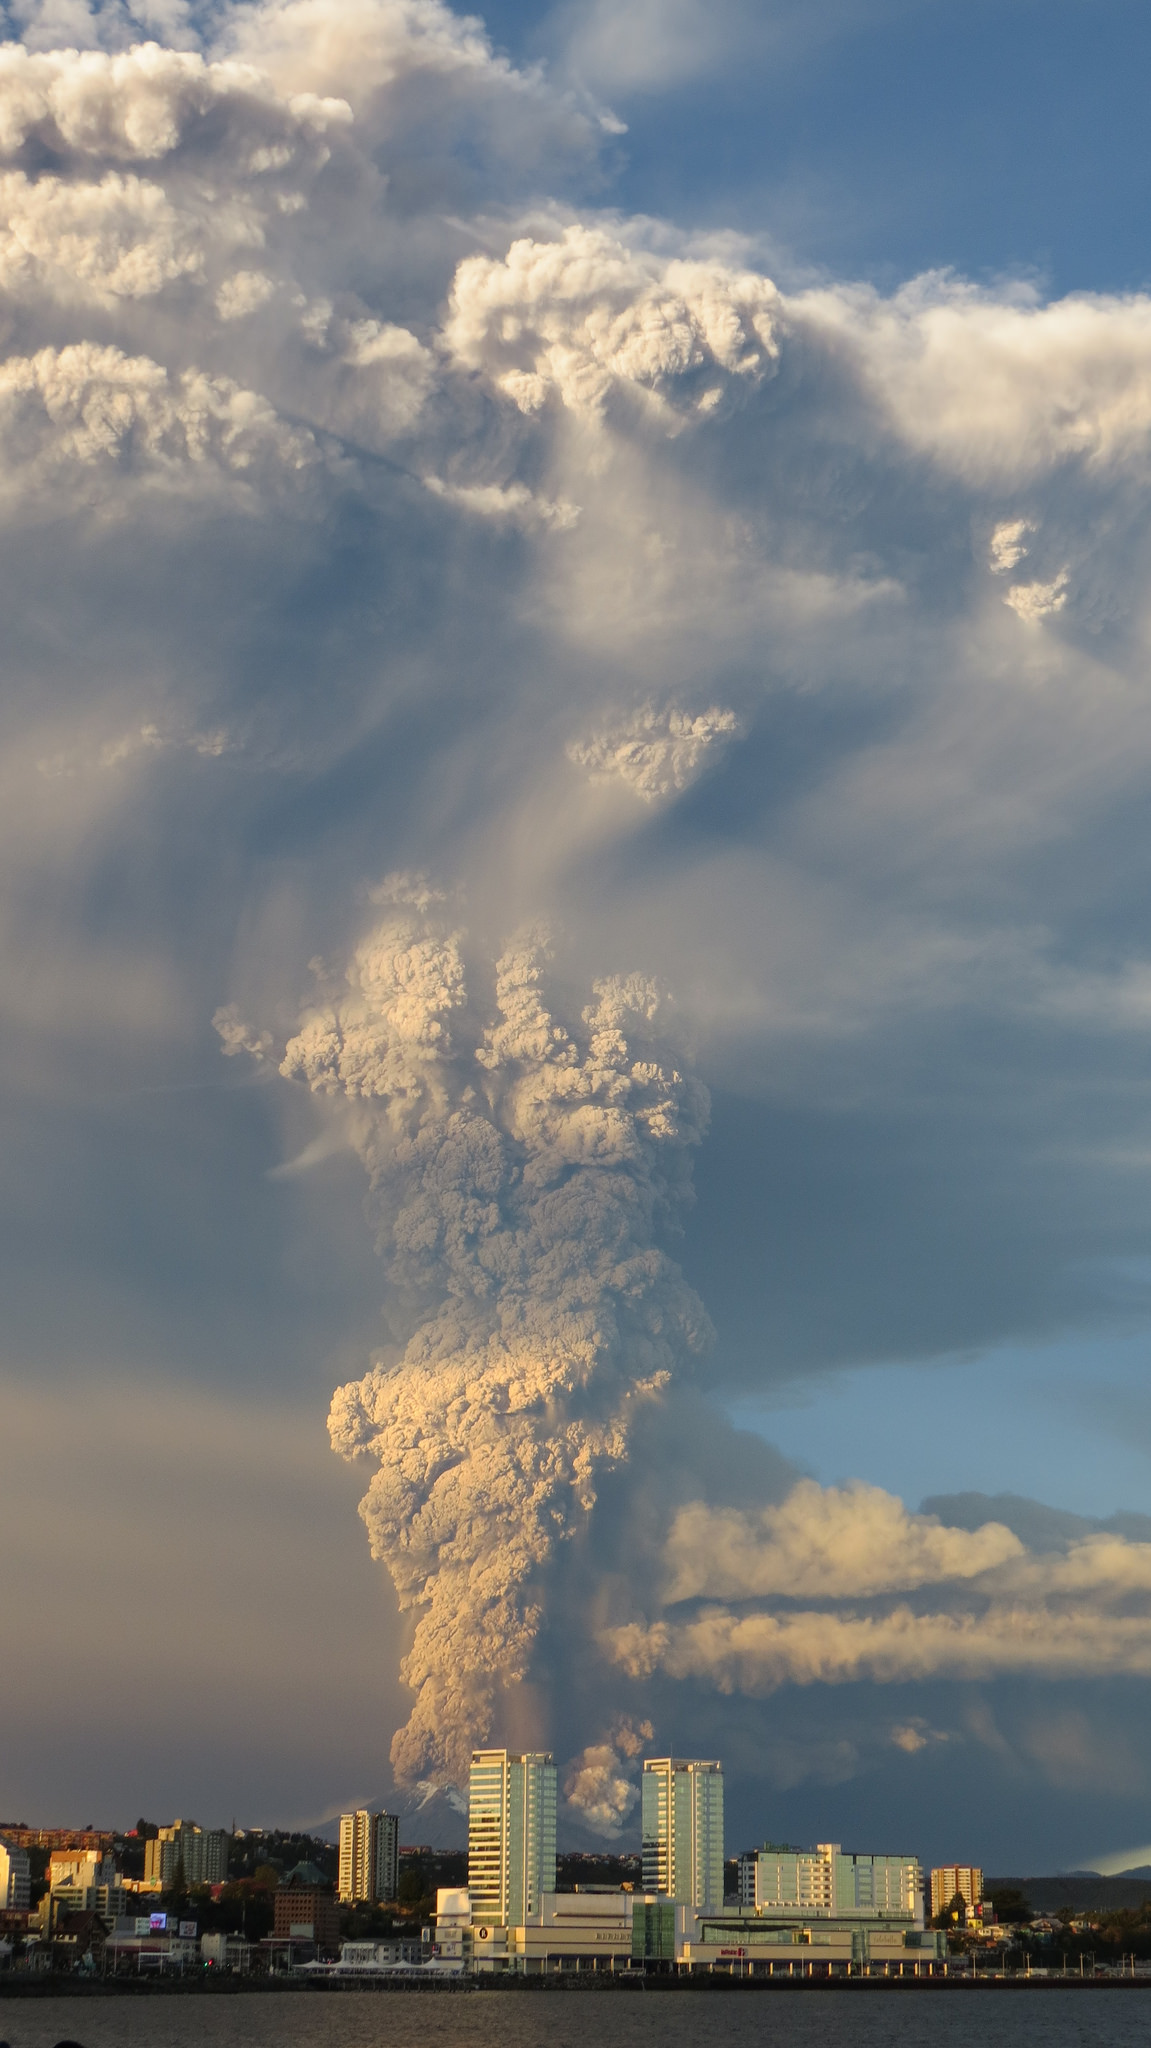 Eruption du volcan Calbuco au Chili